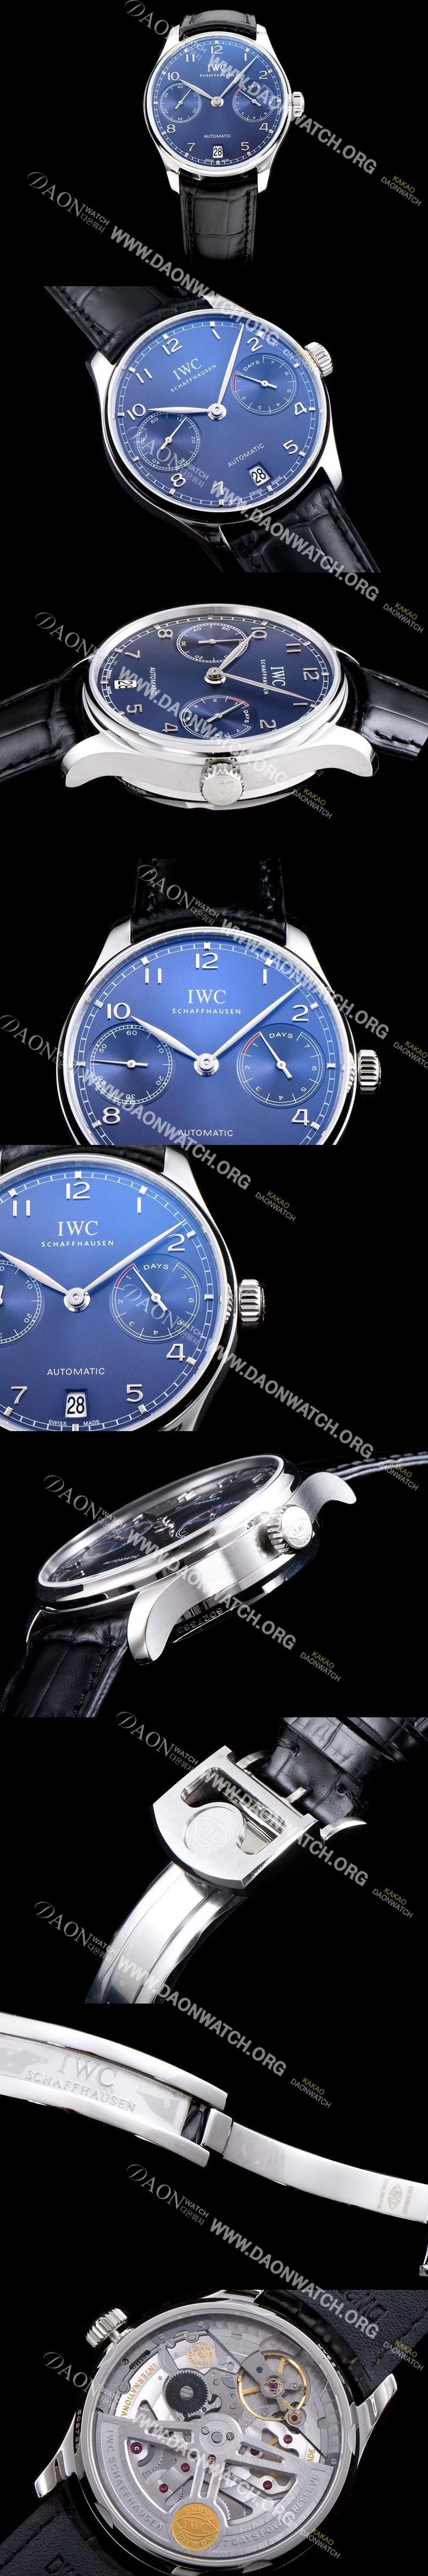 미러급 아이더블유씨 남성용 포루투기즈 IW500710 블루 다이얼 오토매틱 무브먼트 IWC0201 Ⅳ